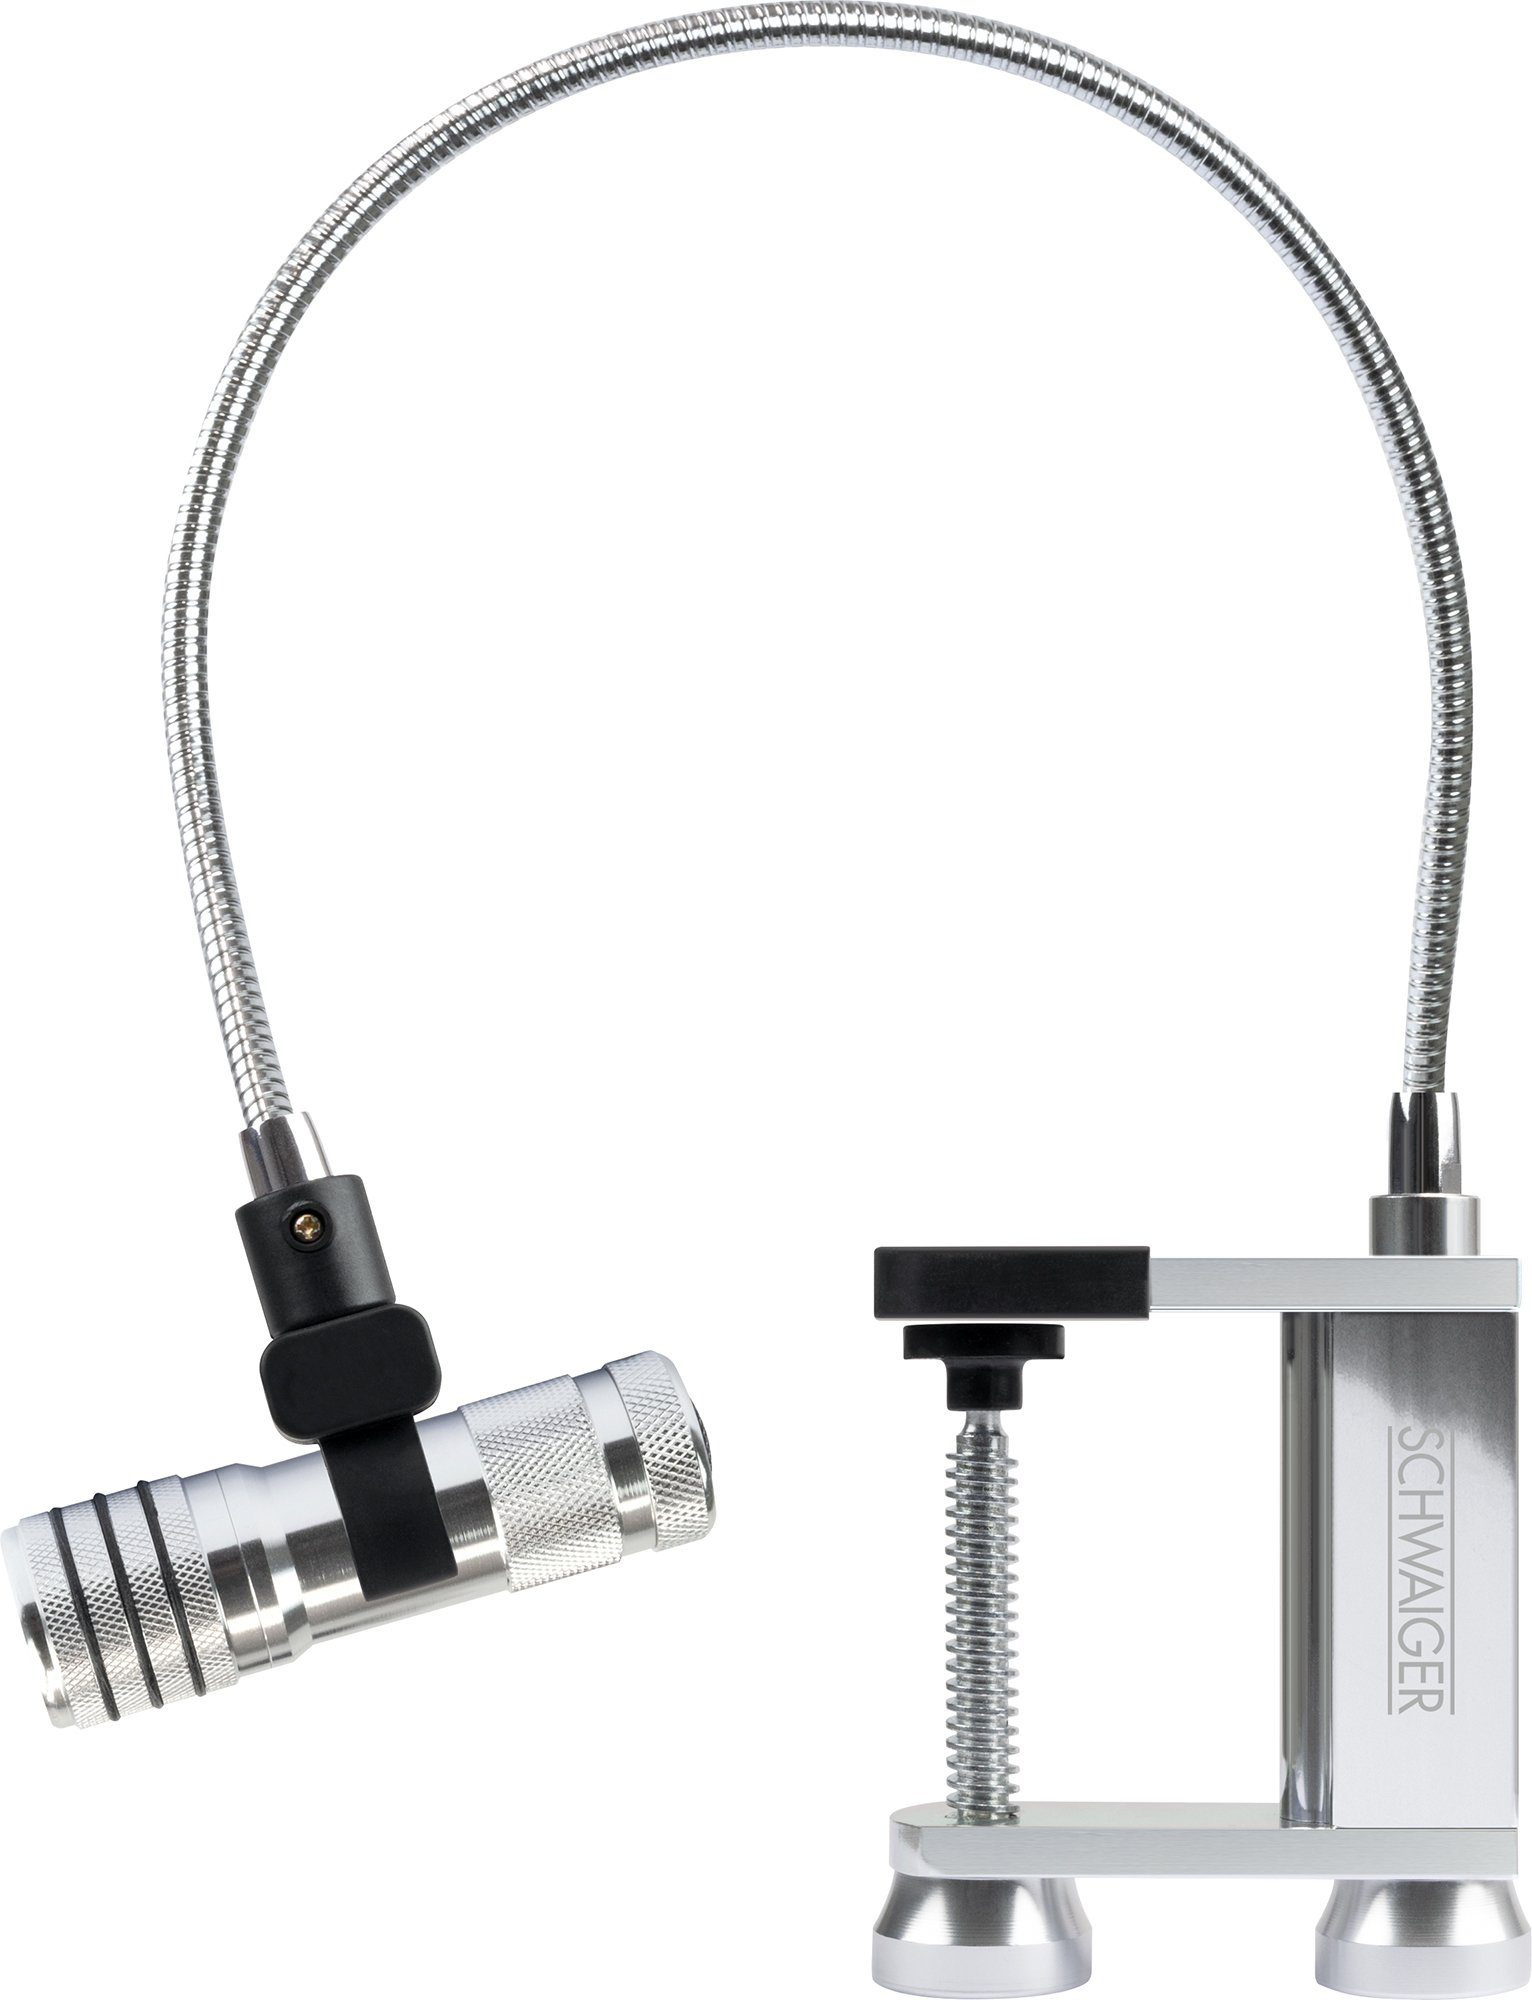 Schwaiger IP44 flexibler Leuchte, zu Grilllampe mit flexiblen der LED, Schwanenhals individuellen Schwanenhals, 658170, SMD Ausrichtung